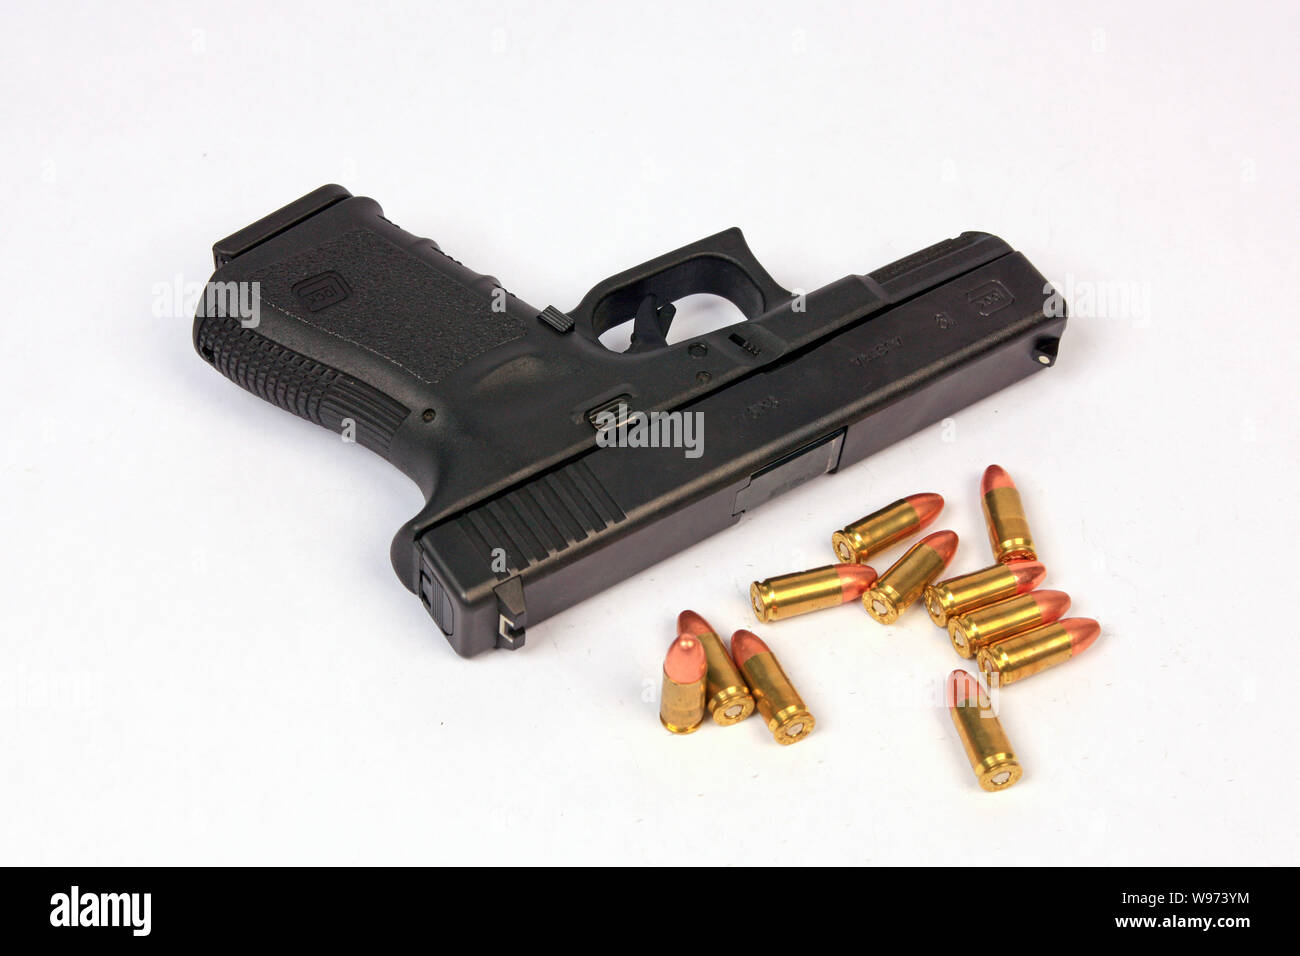 Glock 19 9mm semi-automatico pistola a mano con una manciata di 9mm Luger munizioni Foto Stock